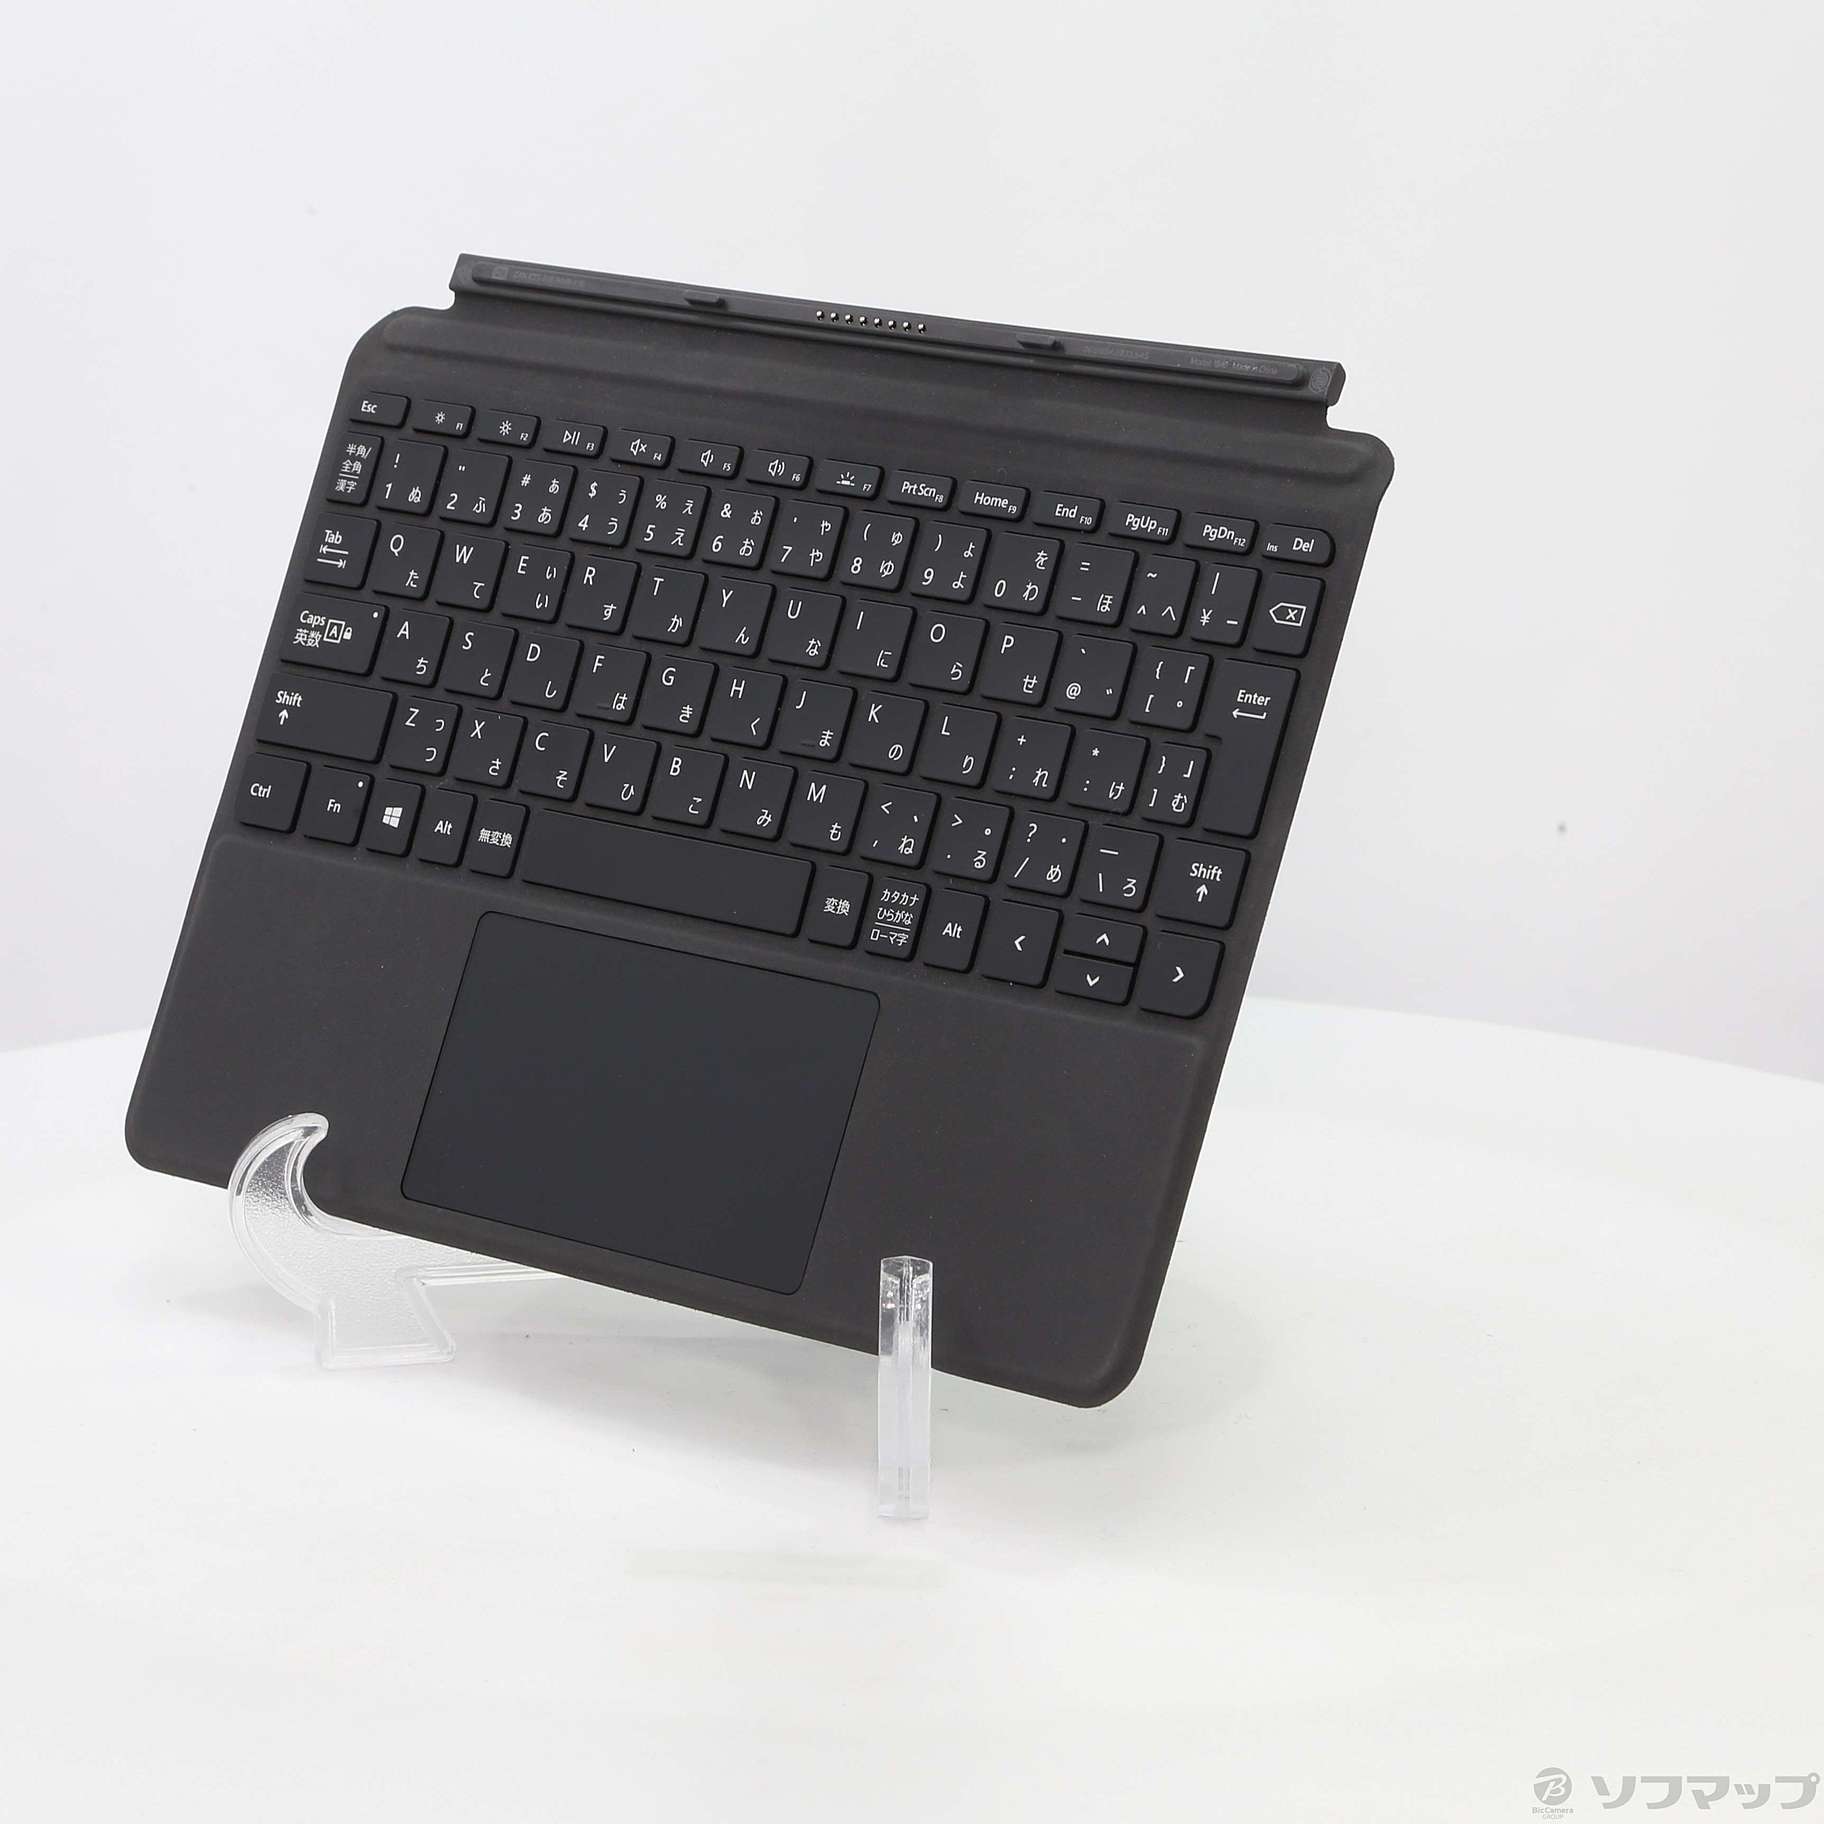 Surface Go タイプ カバー KCM-00019 ブラック